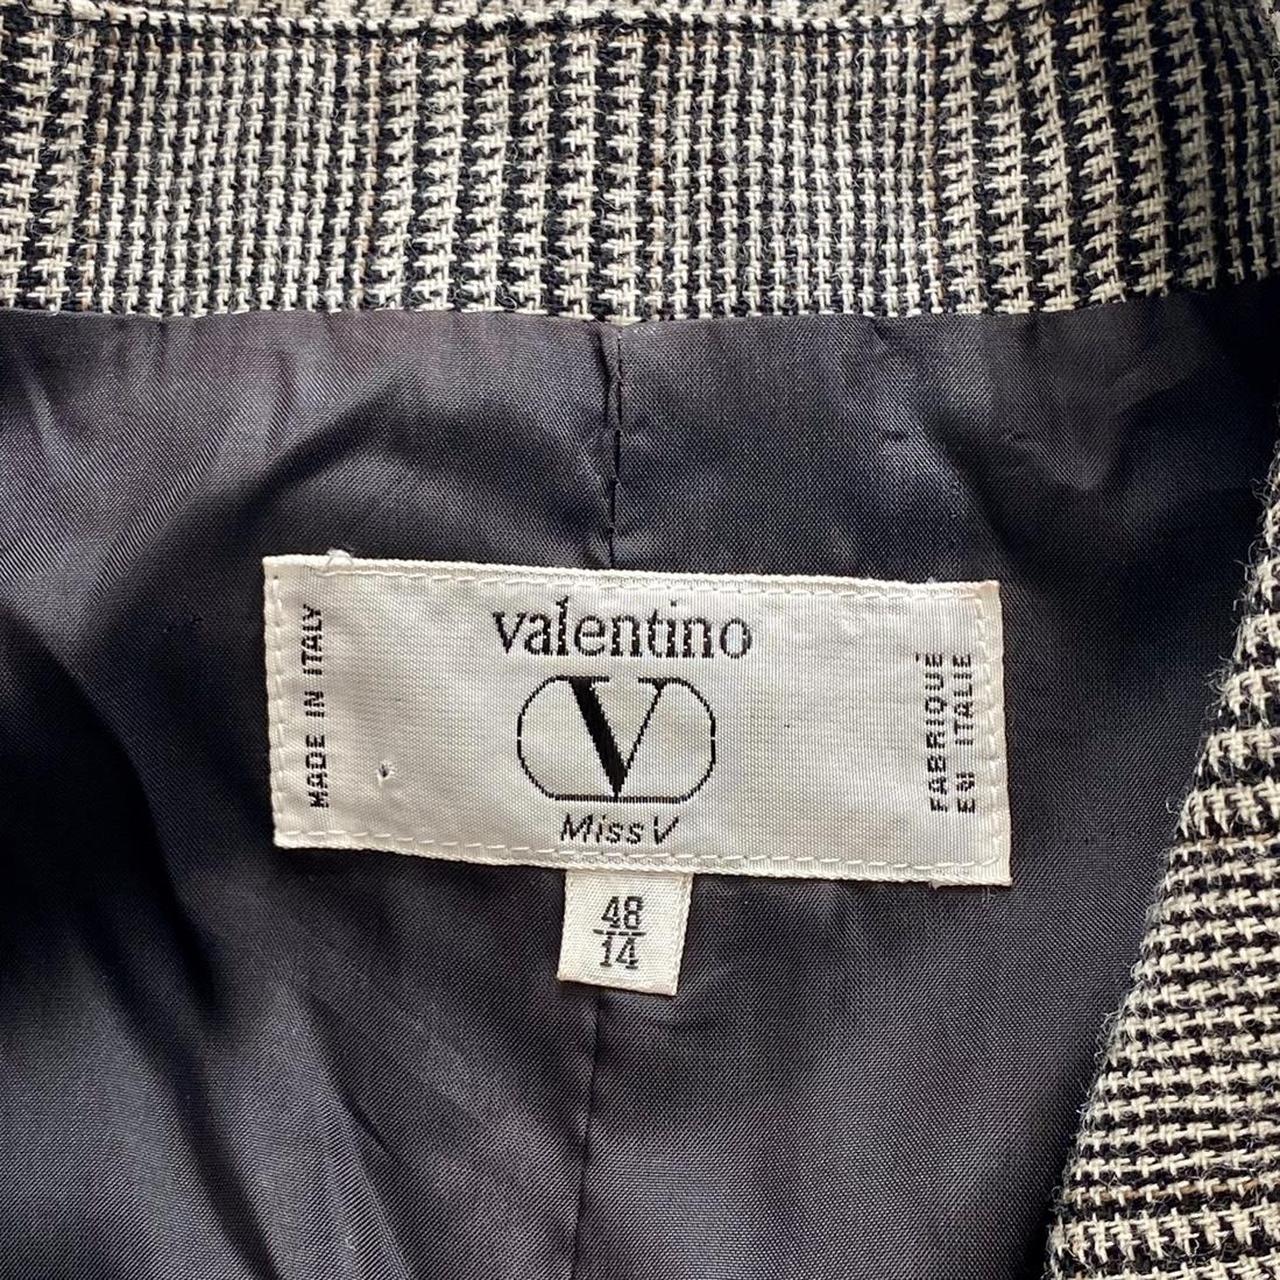 Valentino | Miss V | 100% Wool | Tweed | Black,... - Depop